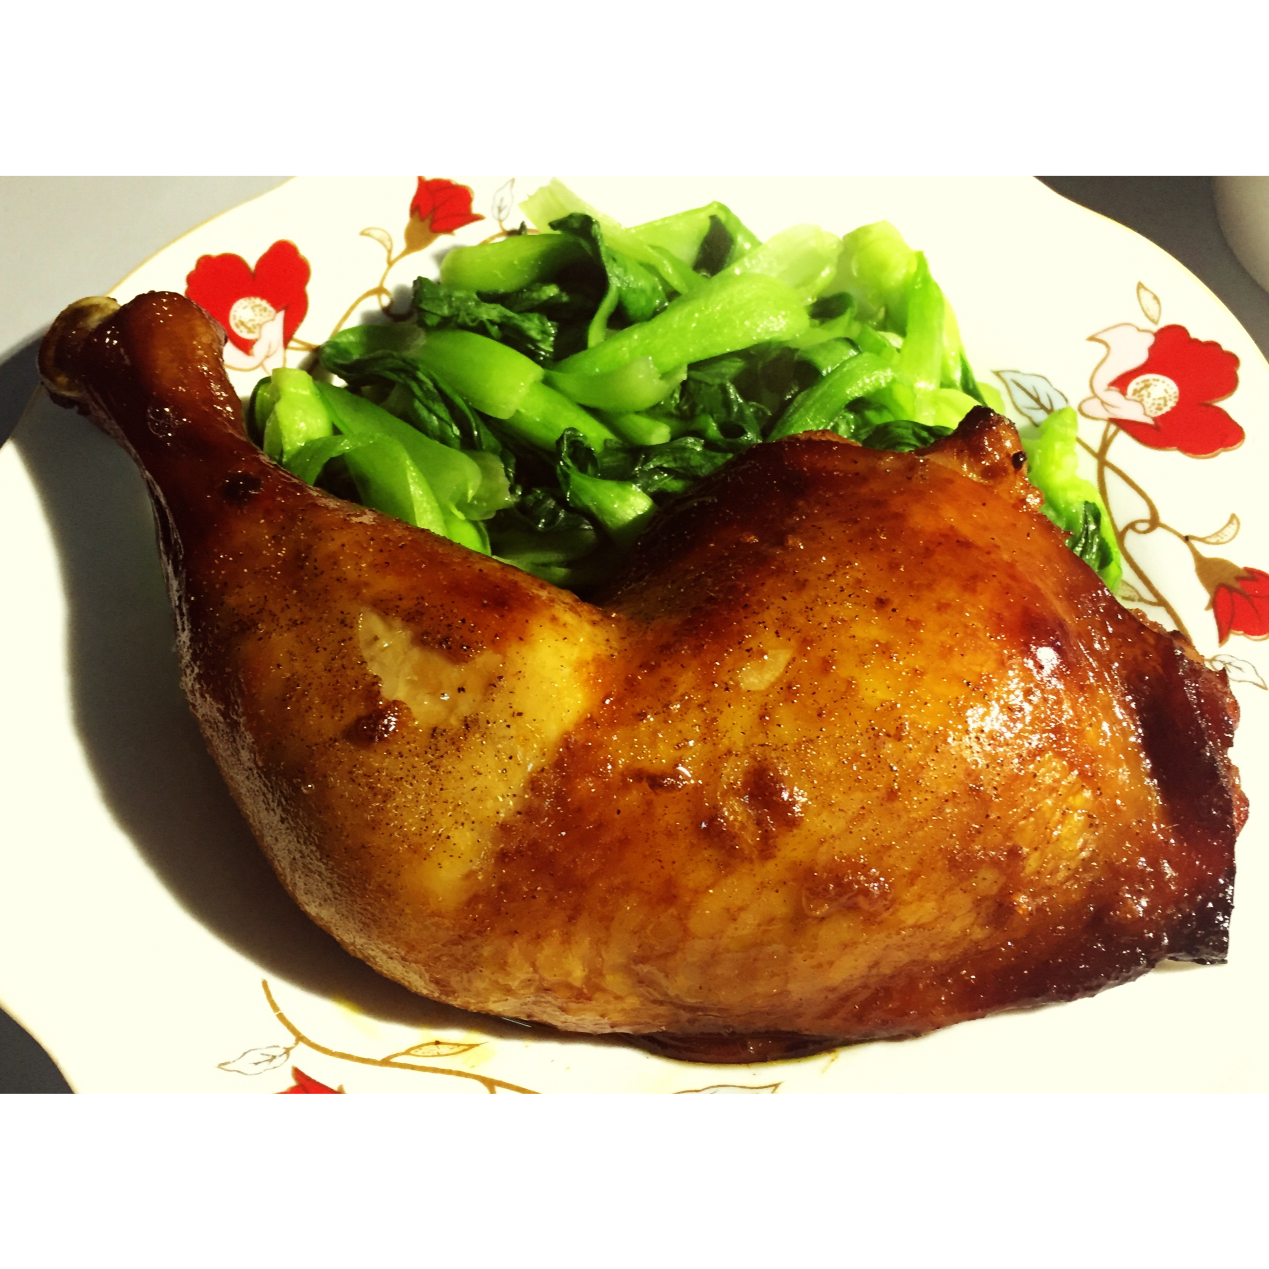 袋袋烤鸡--自制腌料+脆皮秘籍